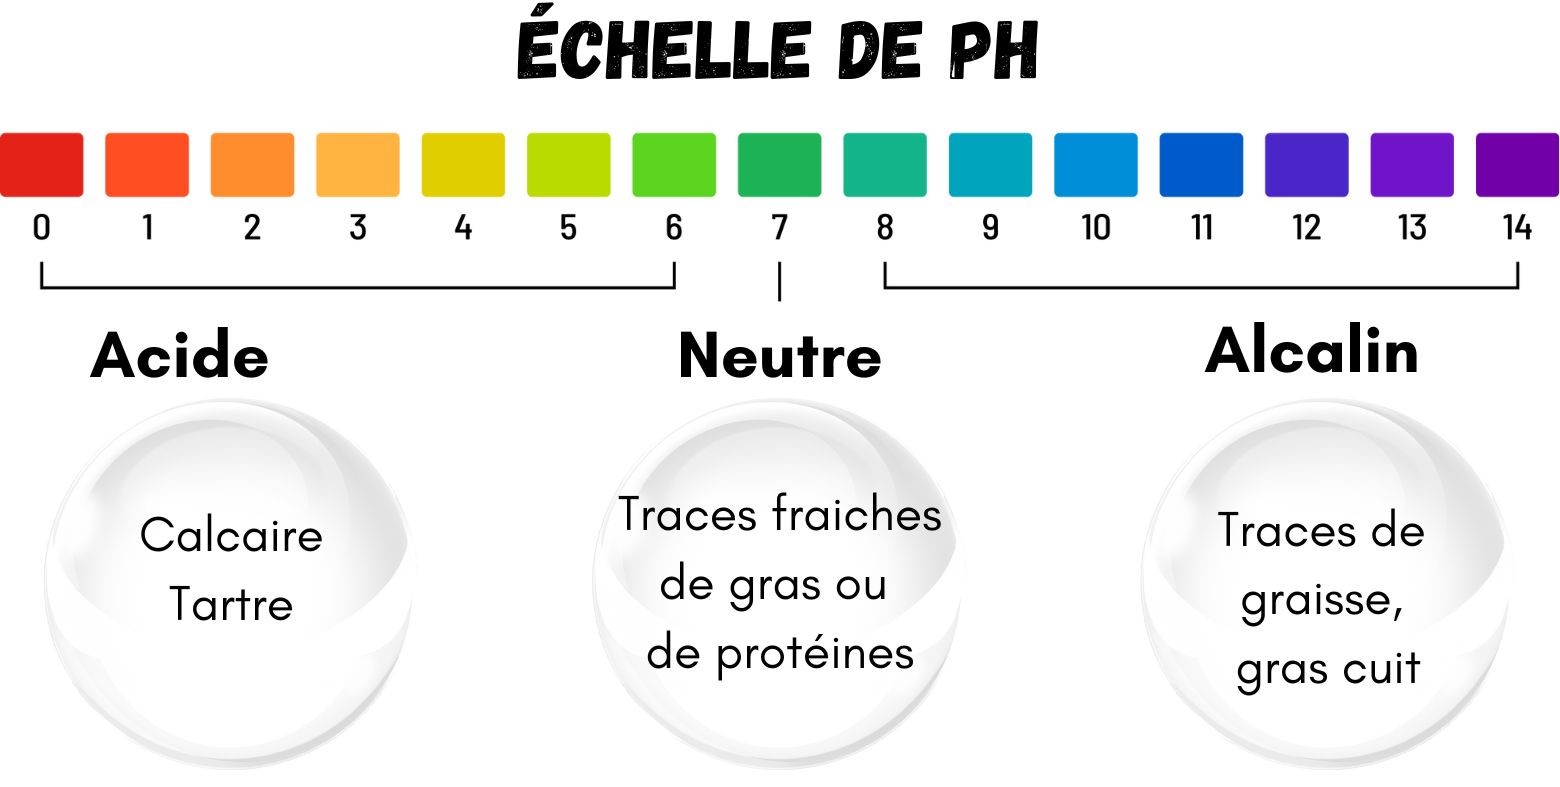 échelle de pH et taches acide: calcaire tartre, neutre: traces fraiches de gras et de protéine, alcalin: graisse et gras cuit